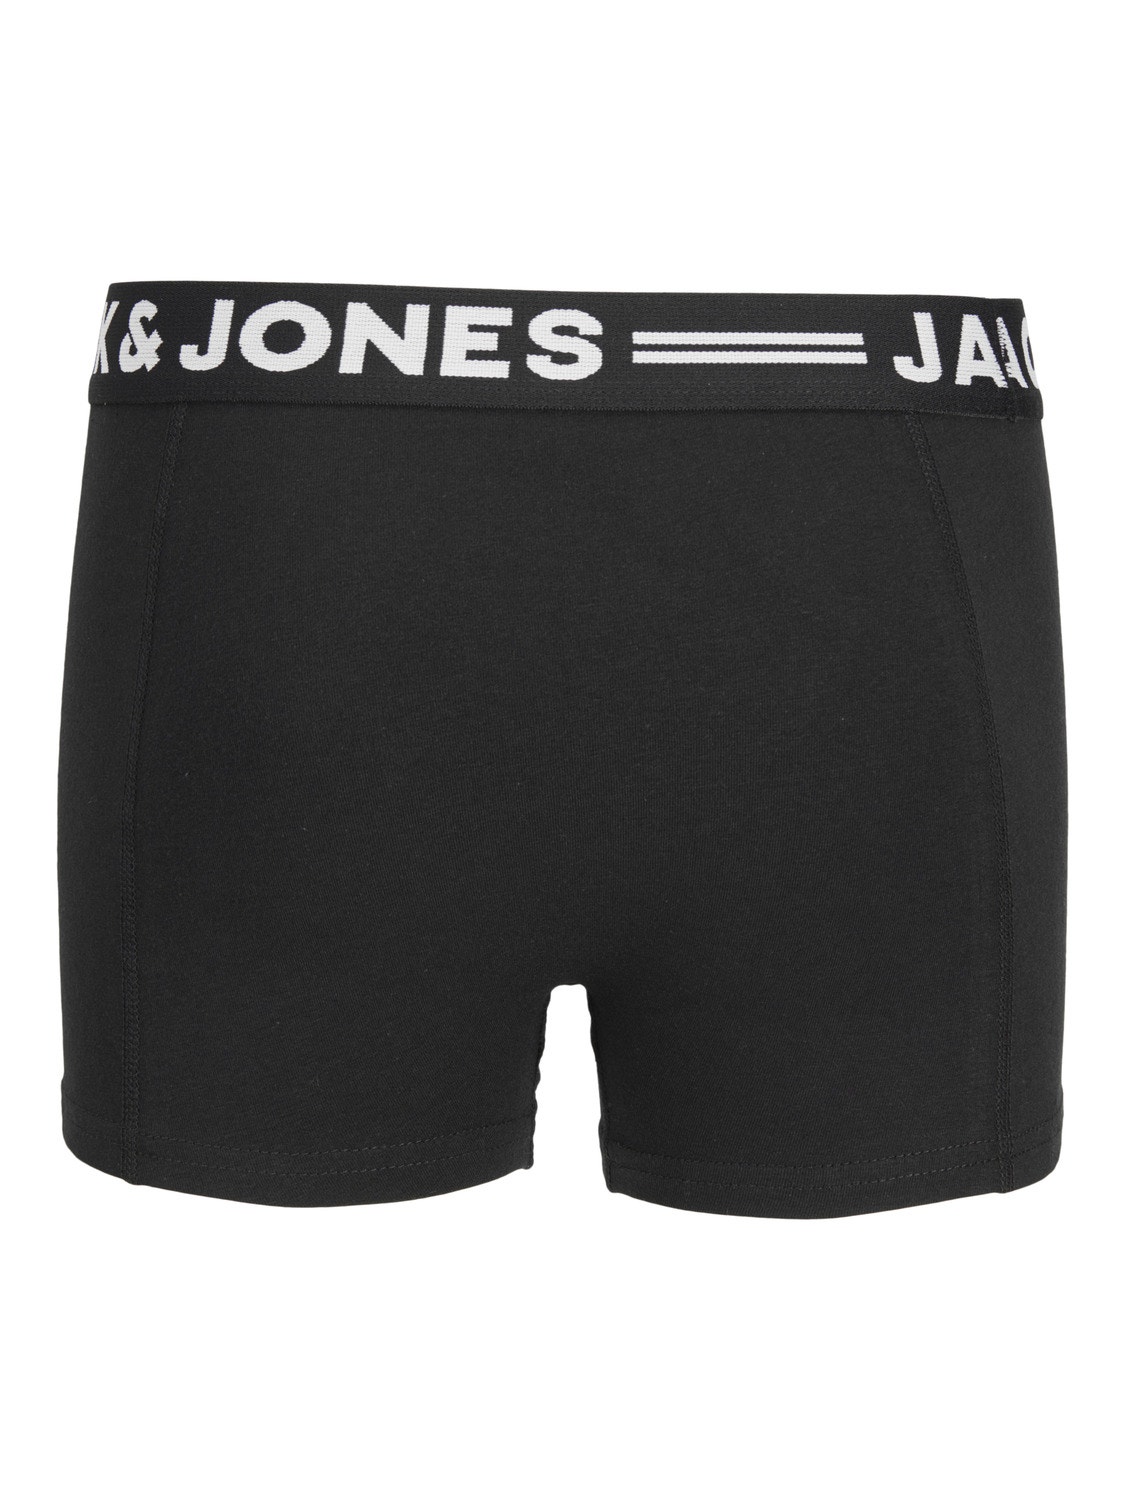 Jack & Jones Pack de 3 Boxers Pour les garçons -Black - 12149293